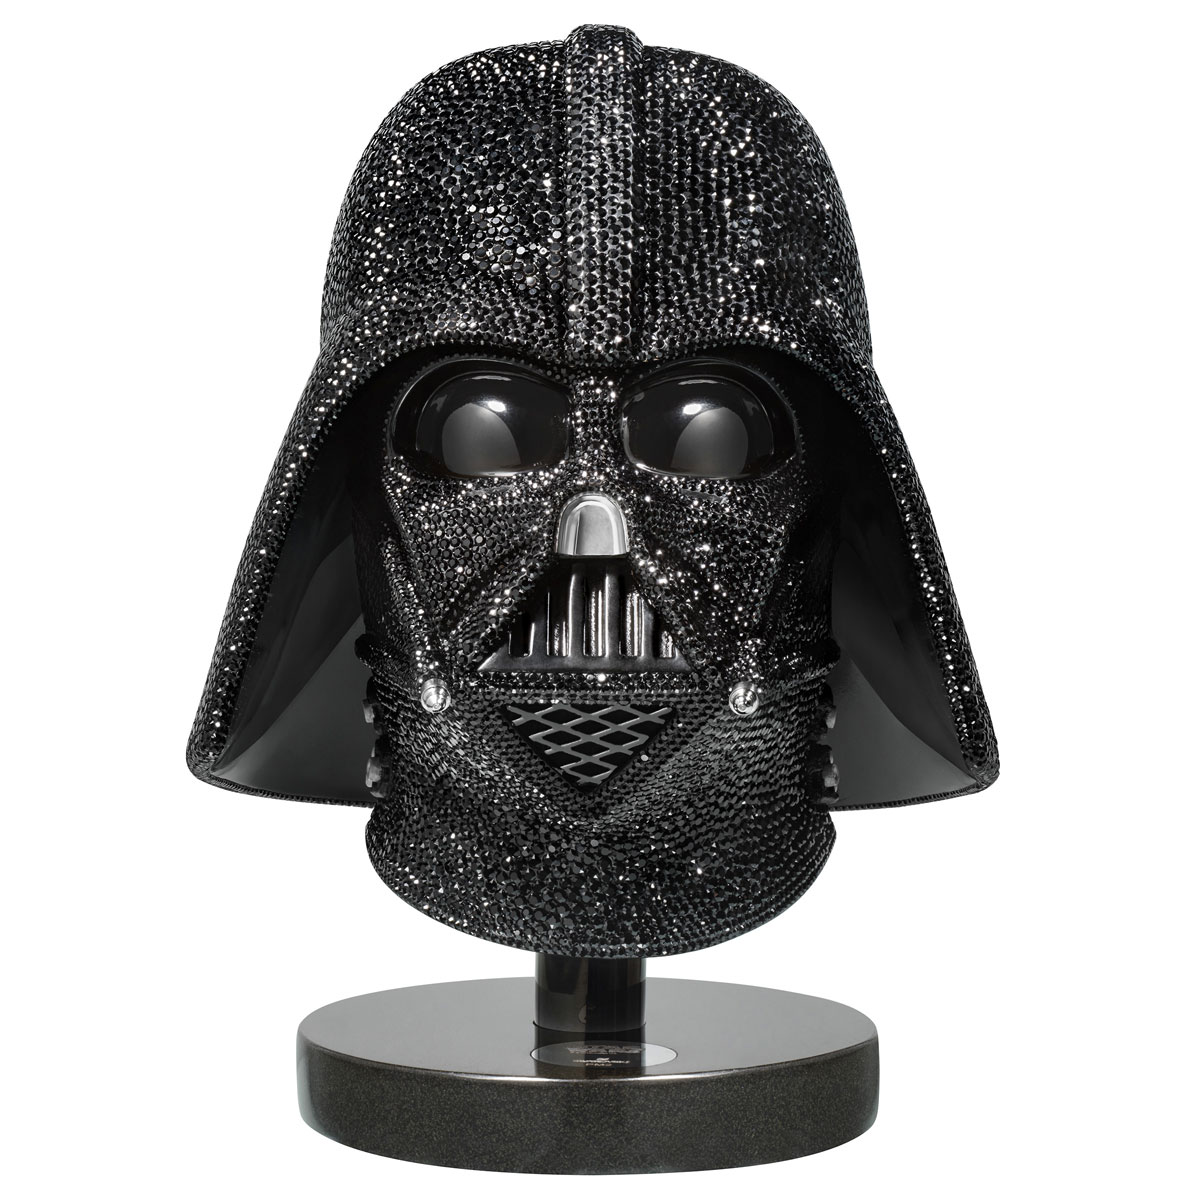 Swarovski Star Wars - Darth Vader Helmet Limited Edition